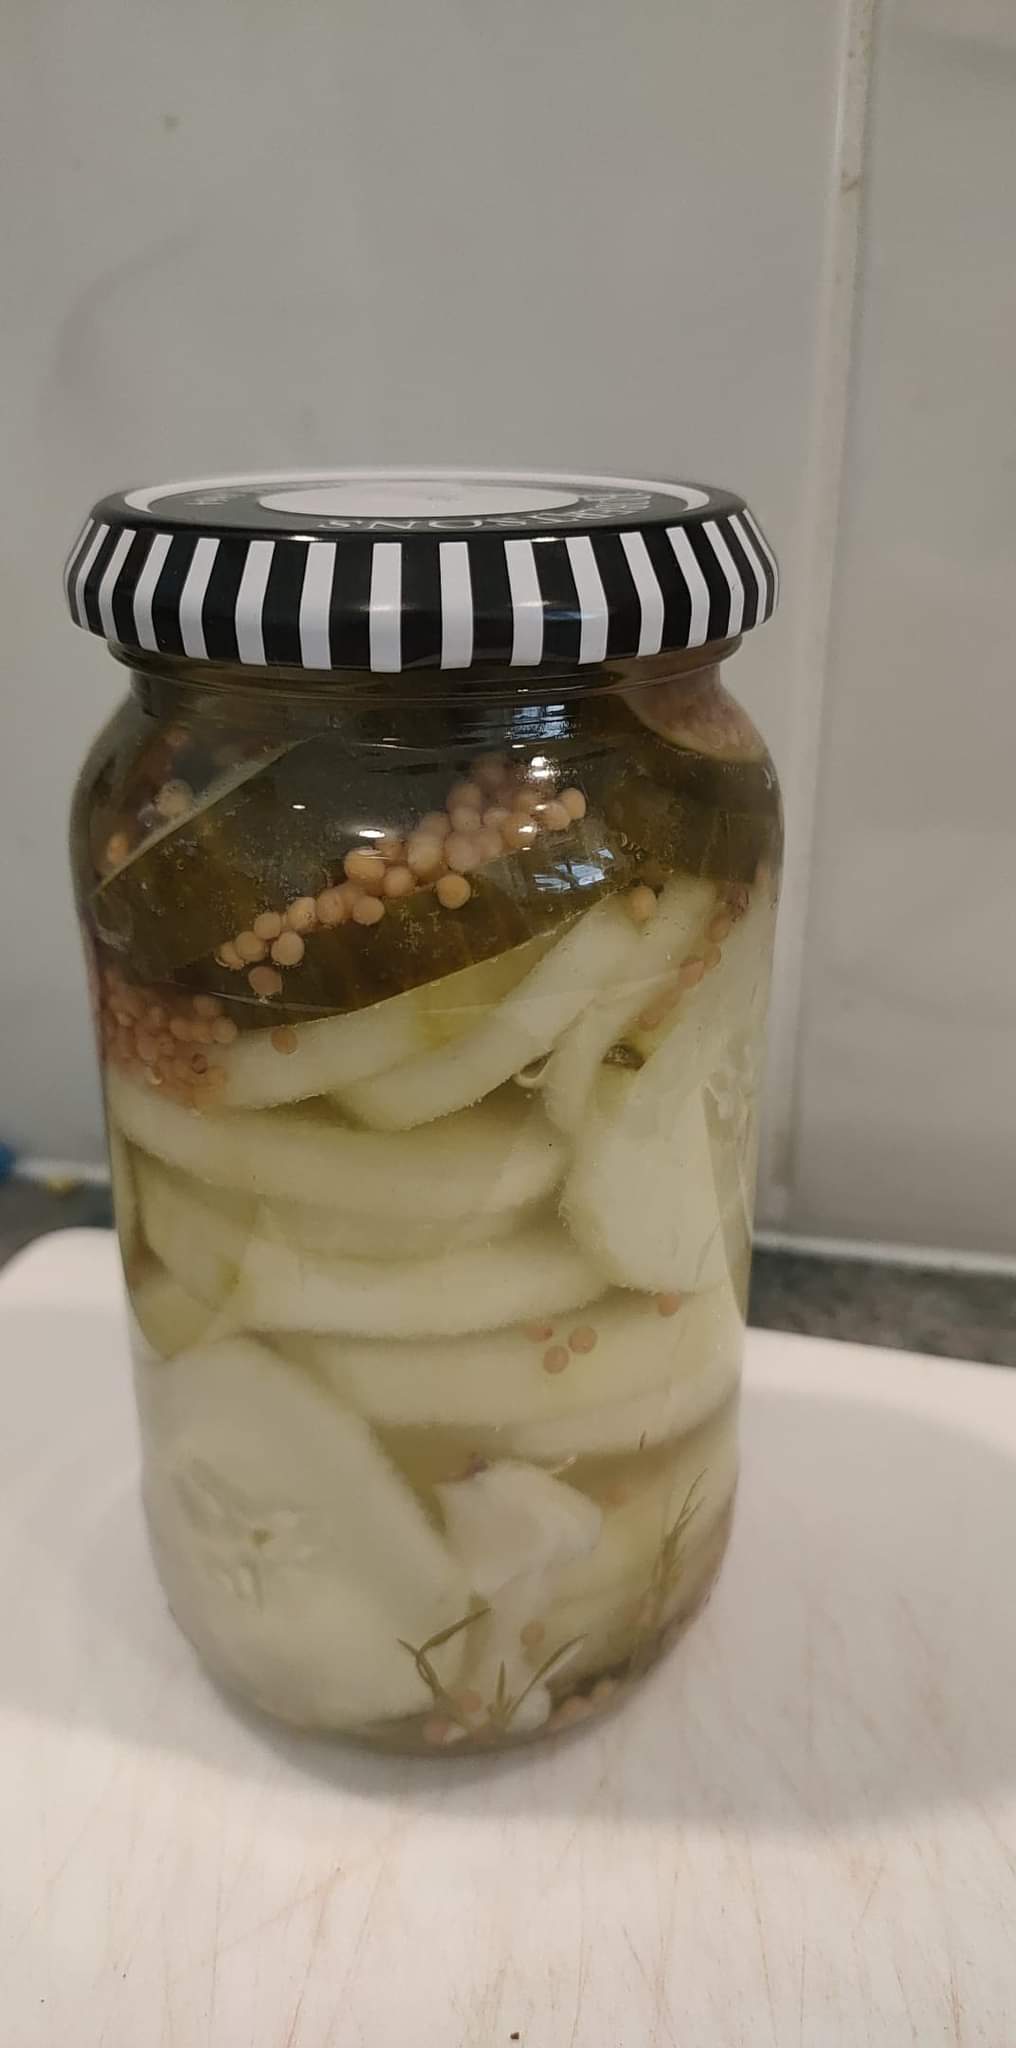 Finished jar of pickles